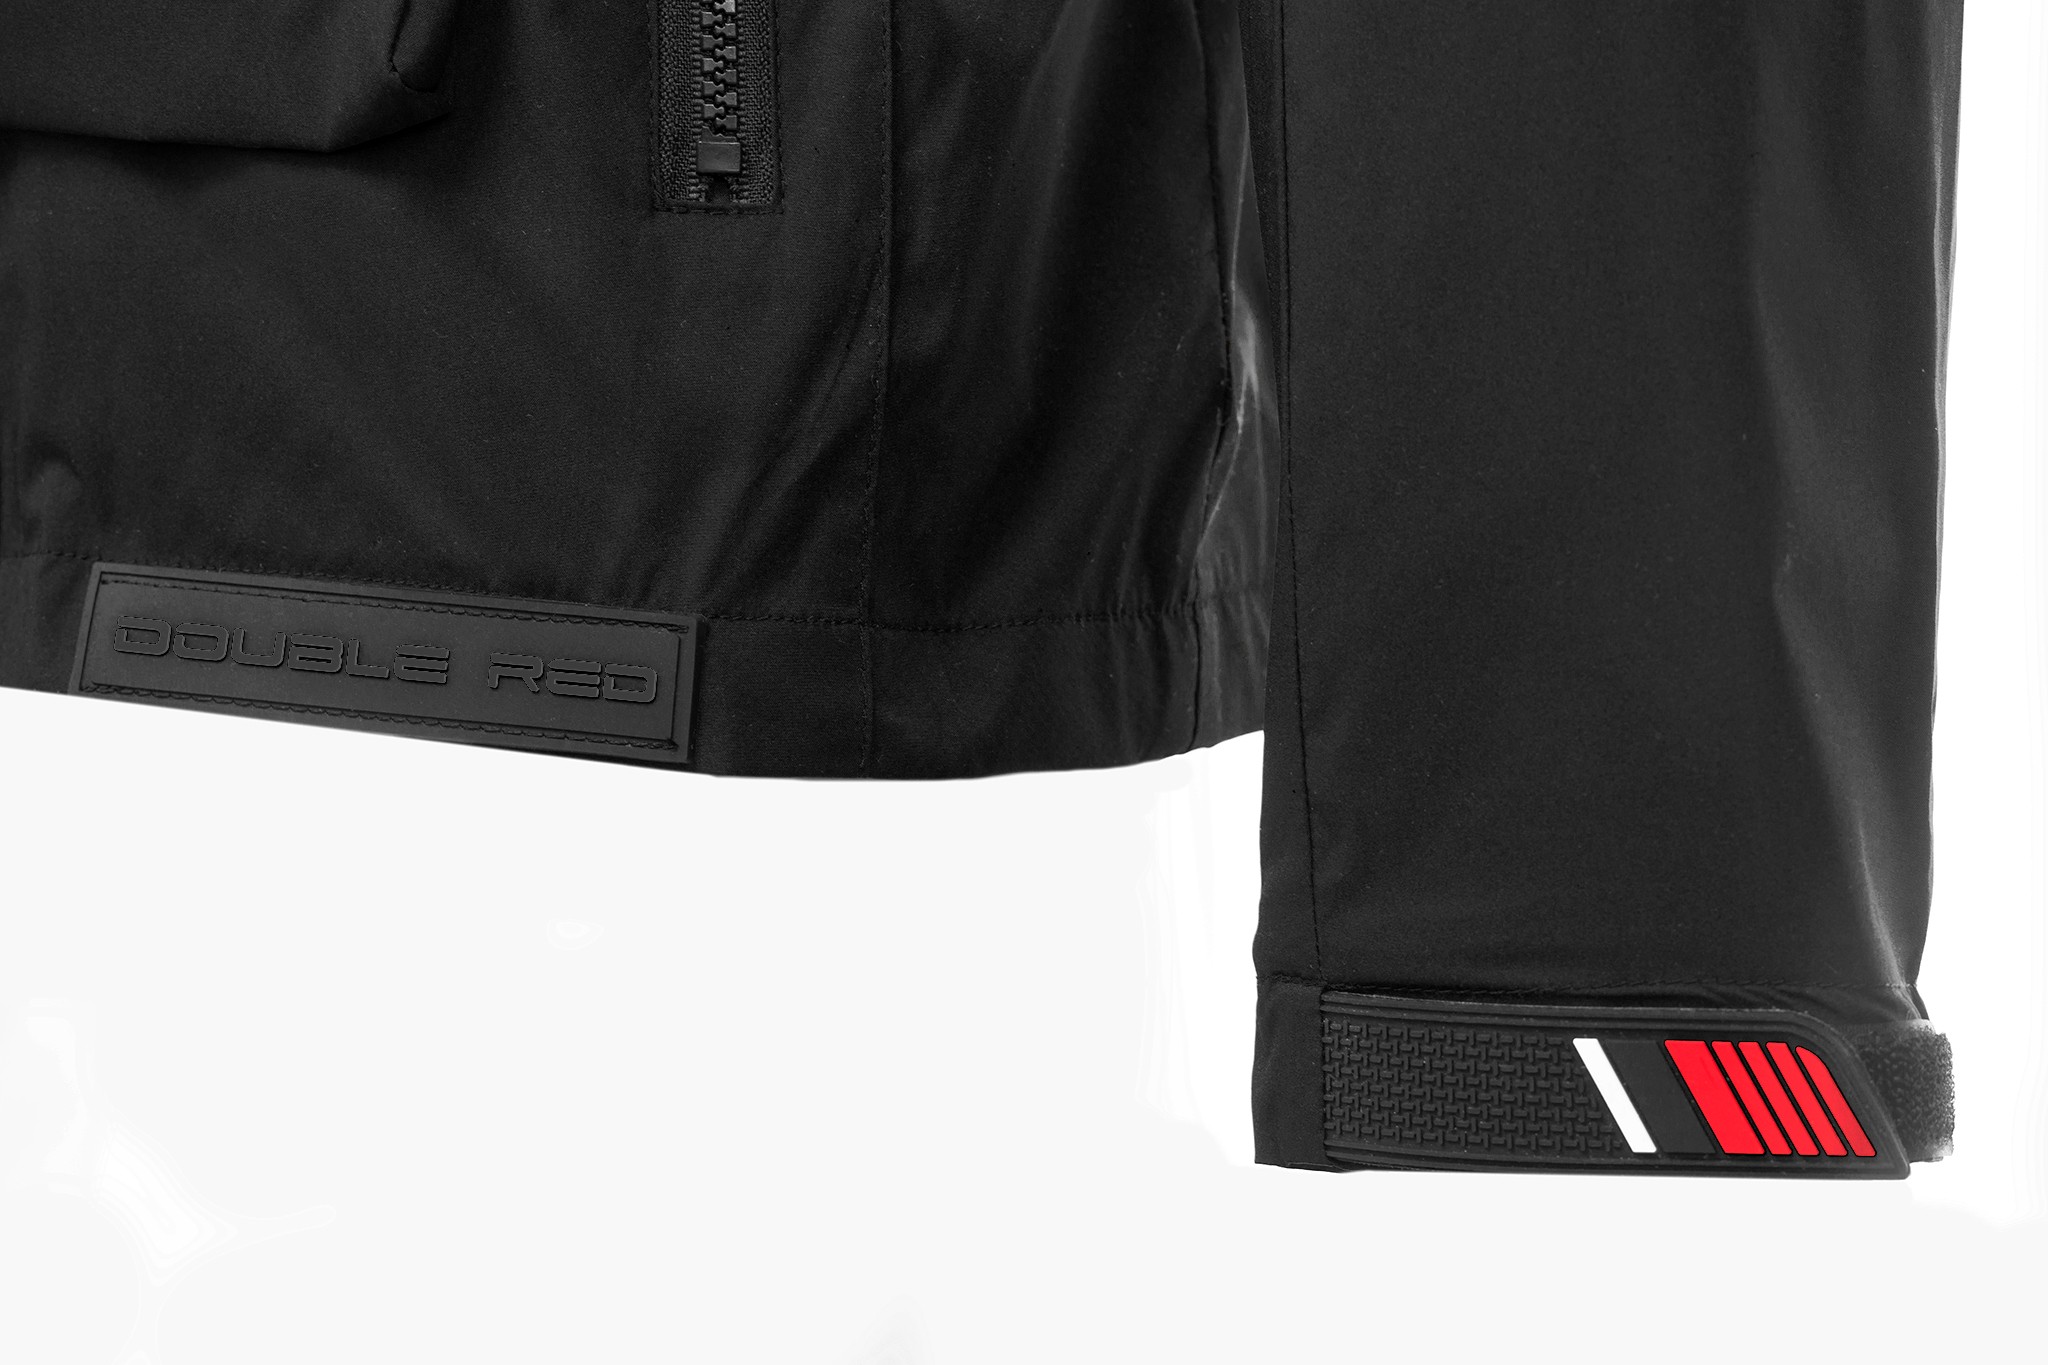 REDBAG Jacket Quattrocolori Edition All Black